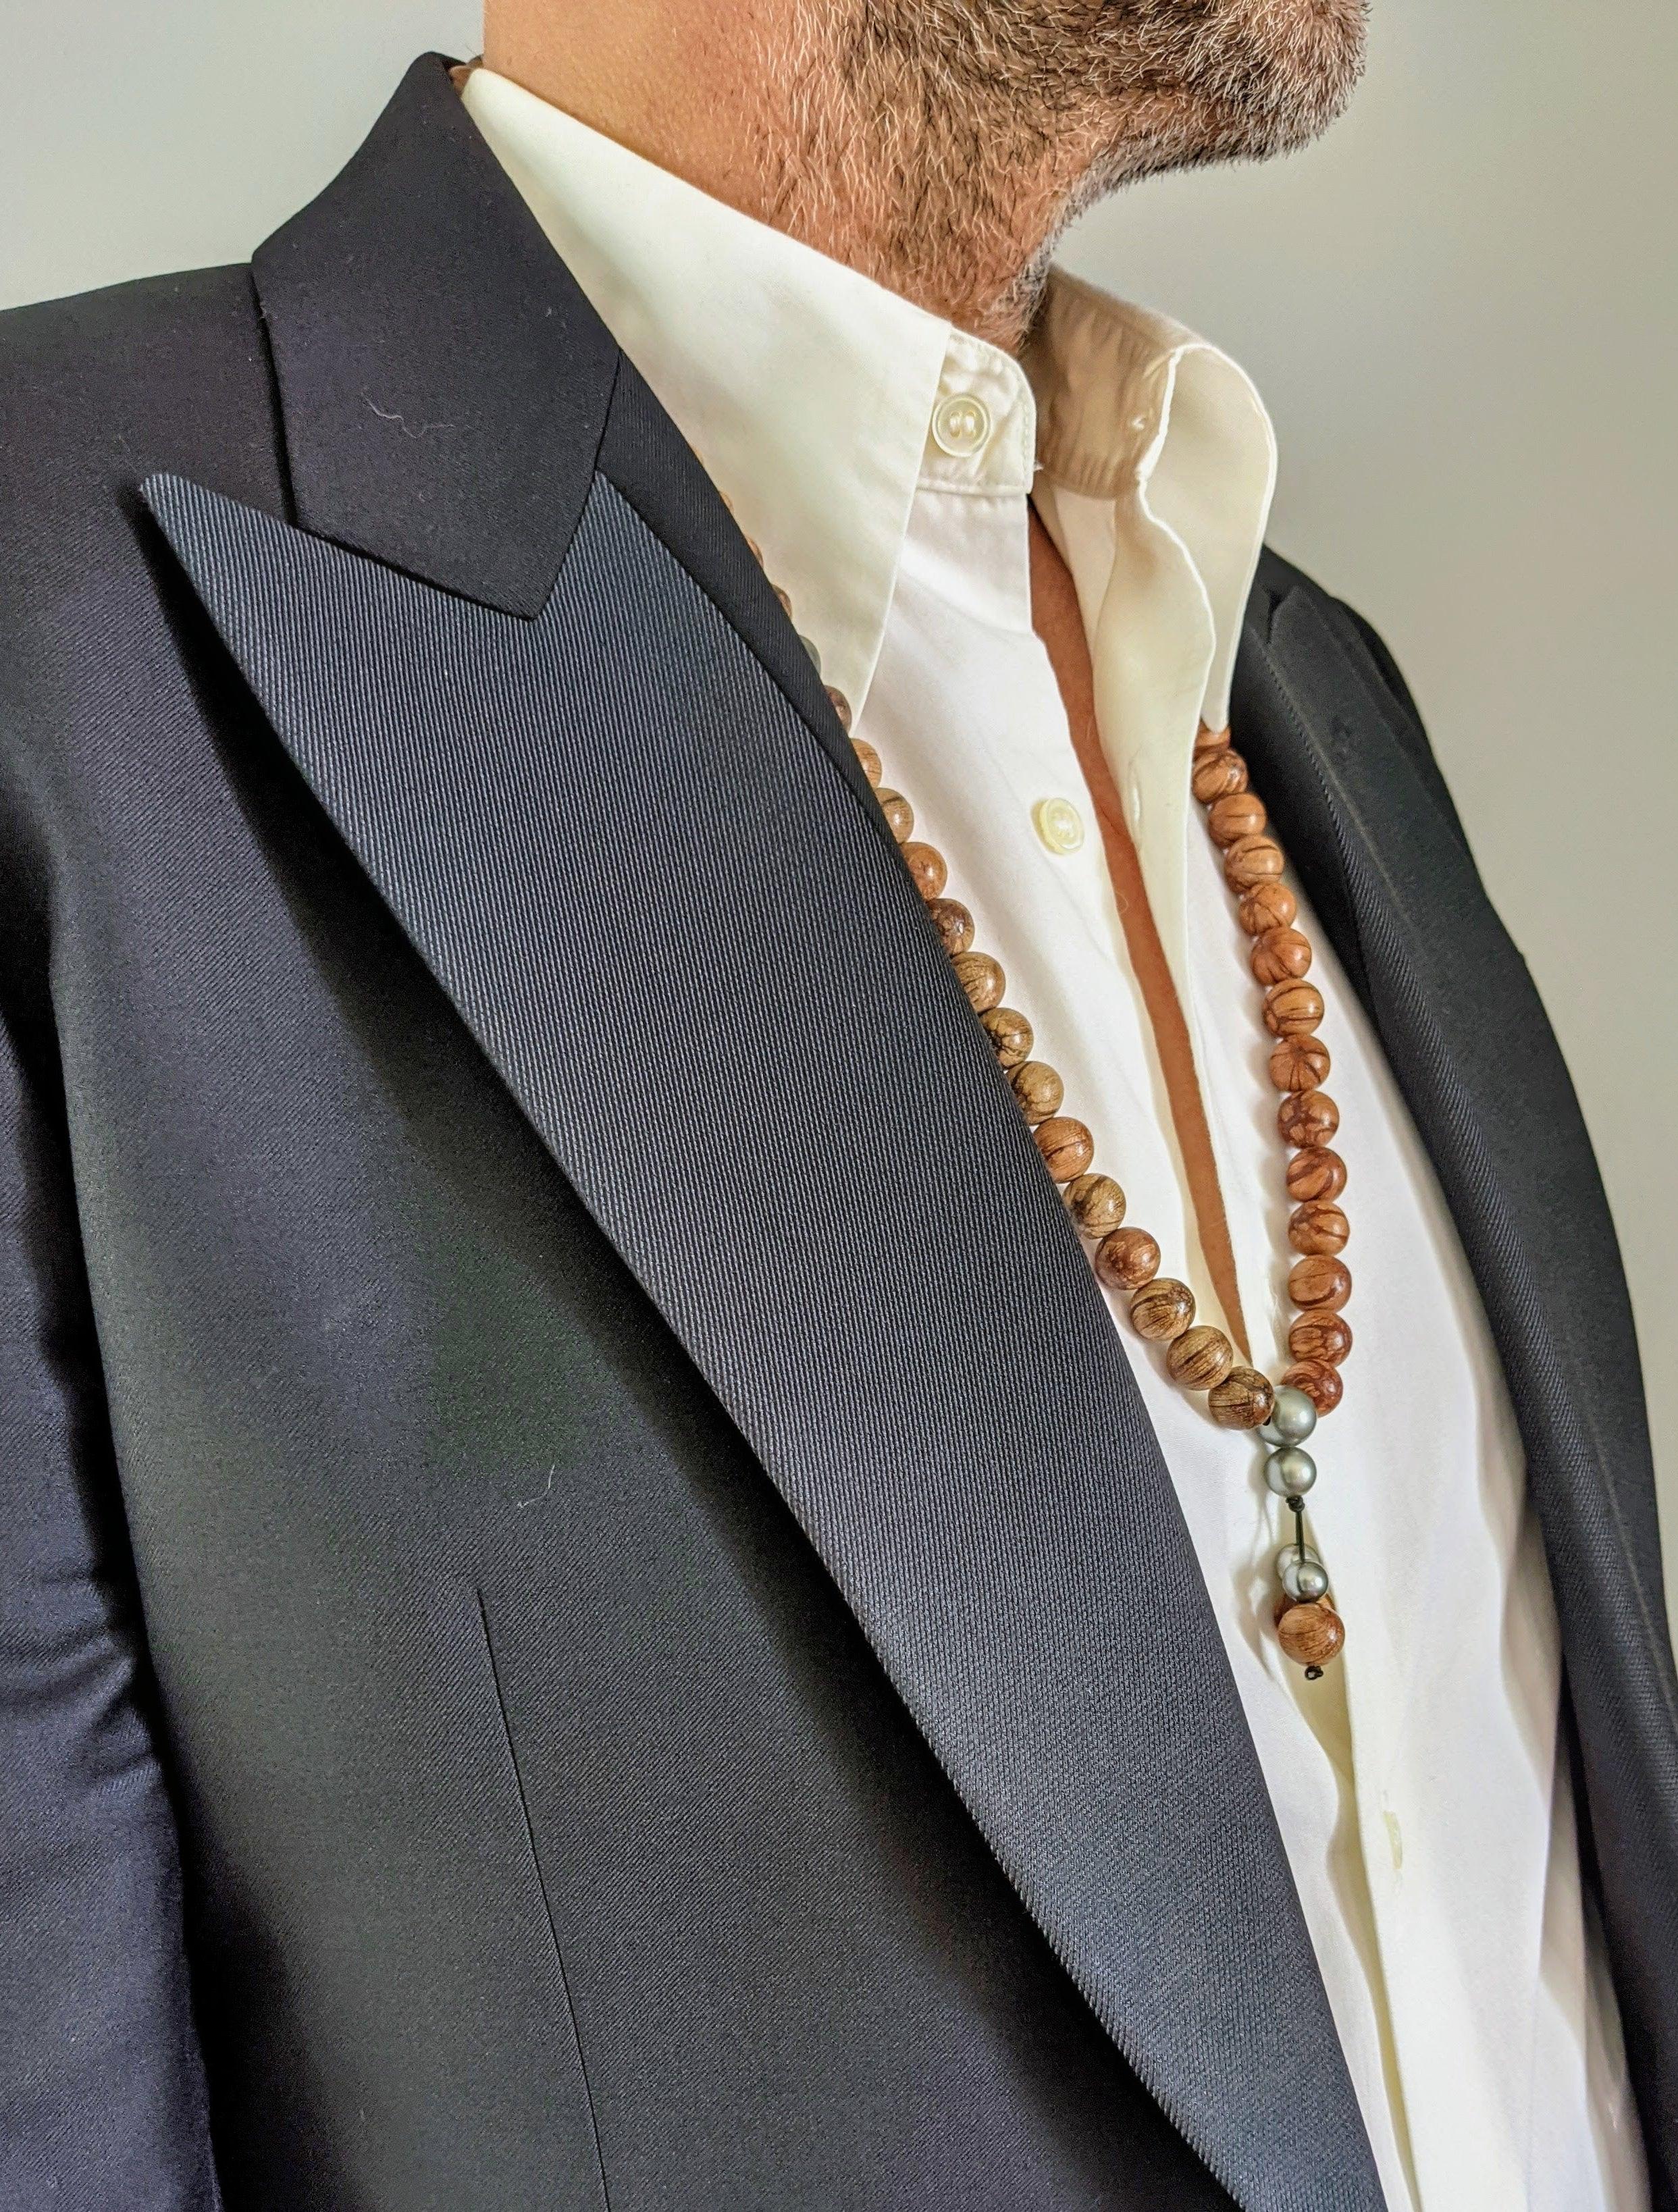 Ce collier est composé de perles en bois d'Abélia très légères d'un diamètre de 12 mm et de 6 belles perles de Tahiti.

Le collier offre un design audacieux et époustouflant inspiré des colliers de prière bouddhistes. Les perles et les perles sont